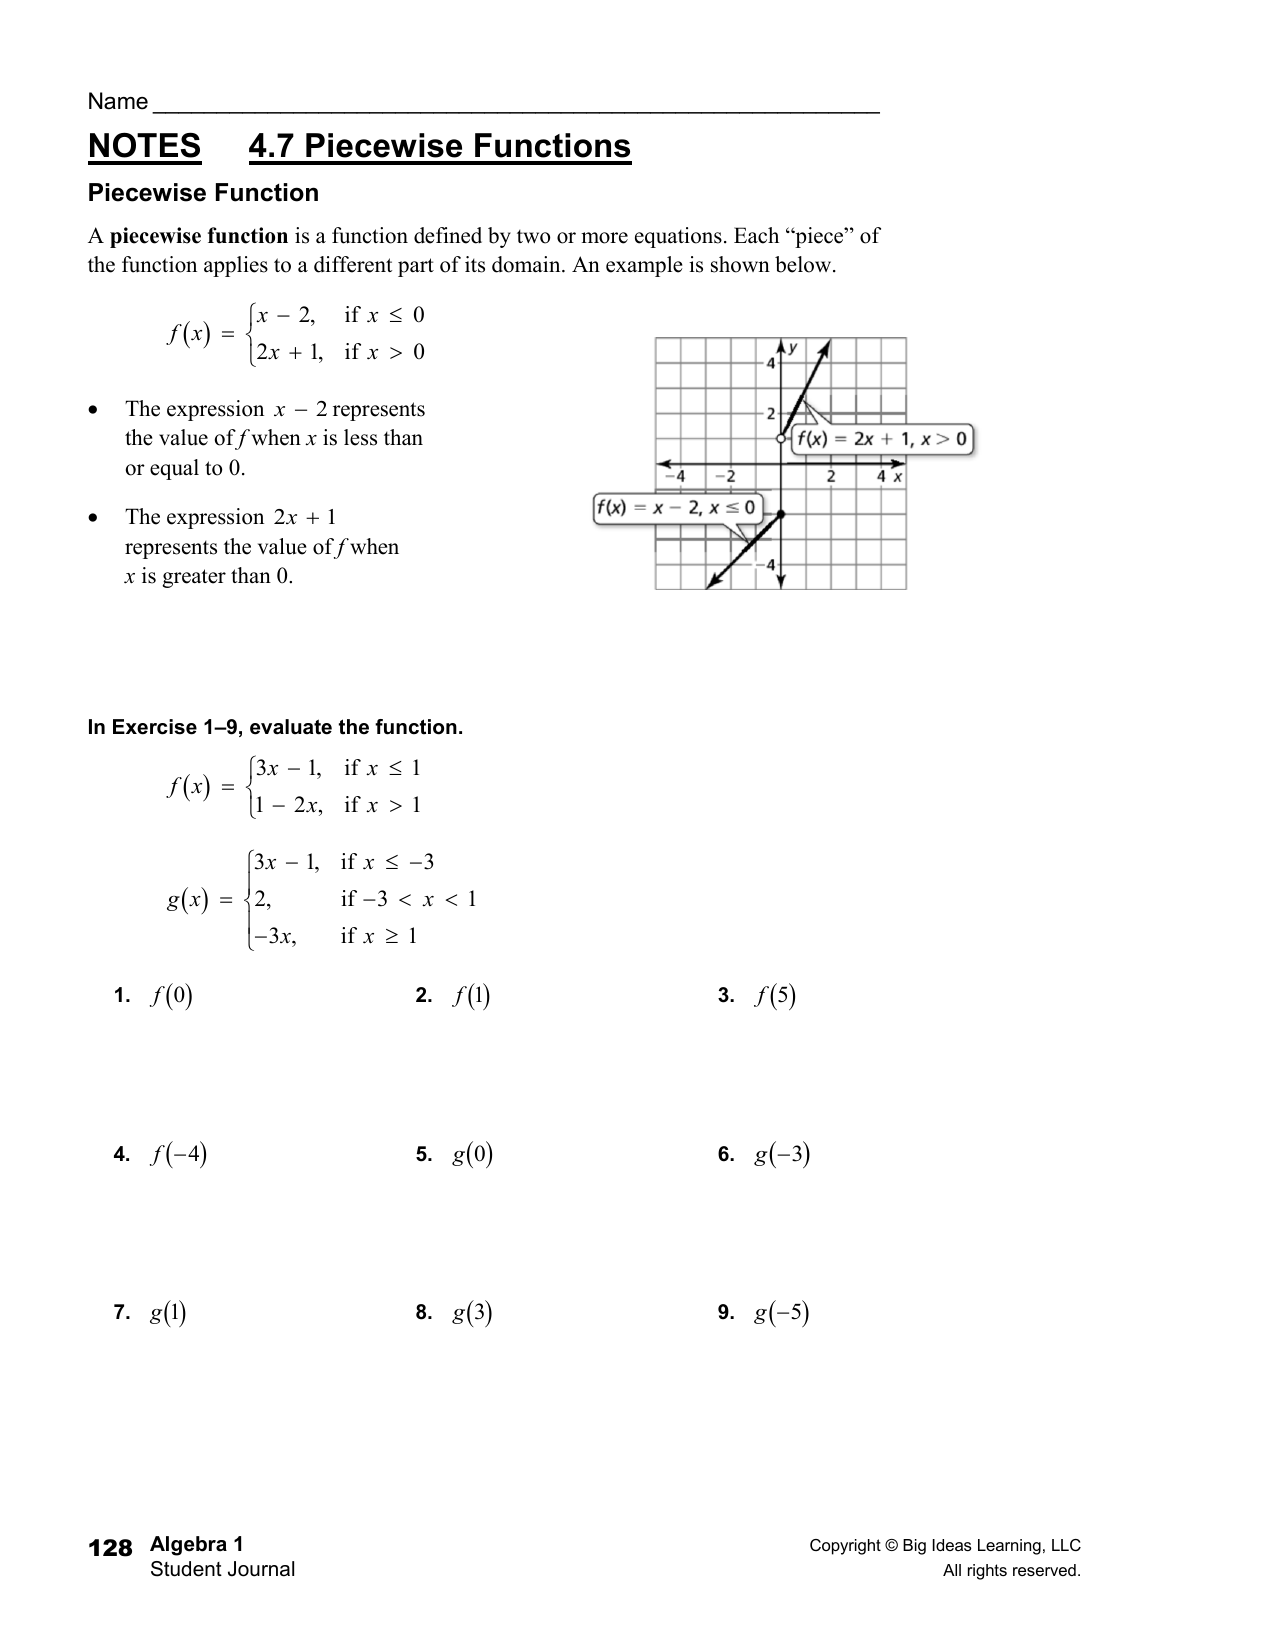 Piecewise Functions Homework Regarding Evaluating Piecewise Functions Worksheet